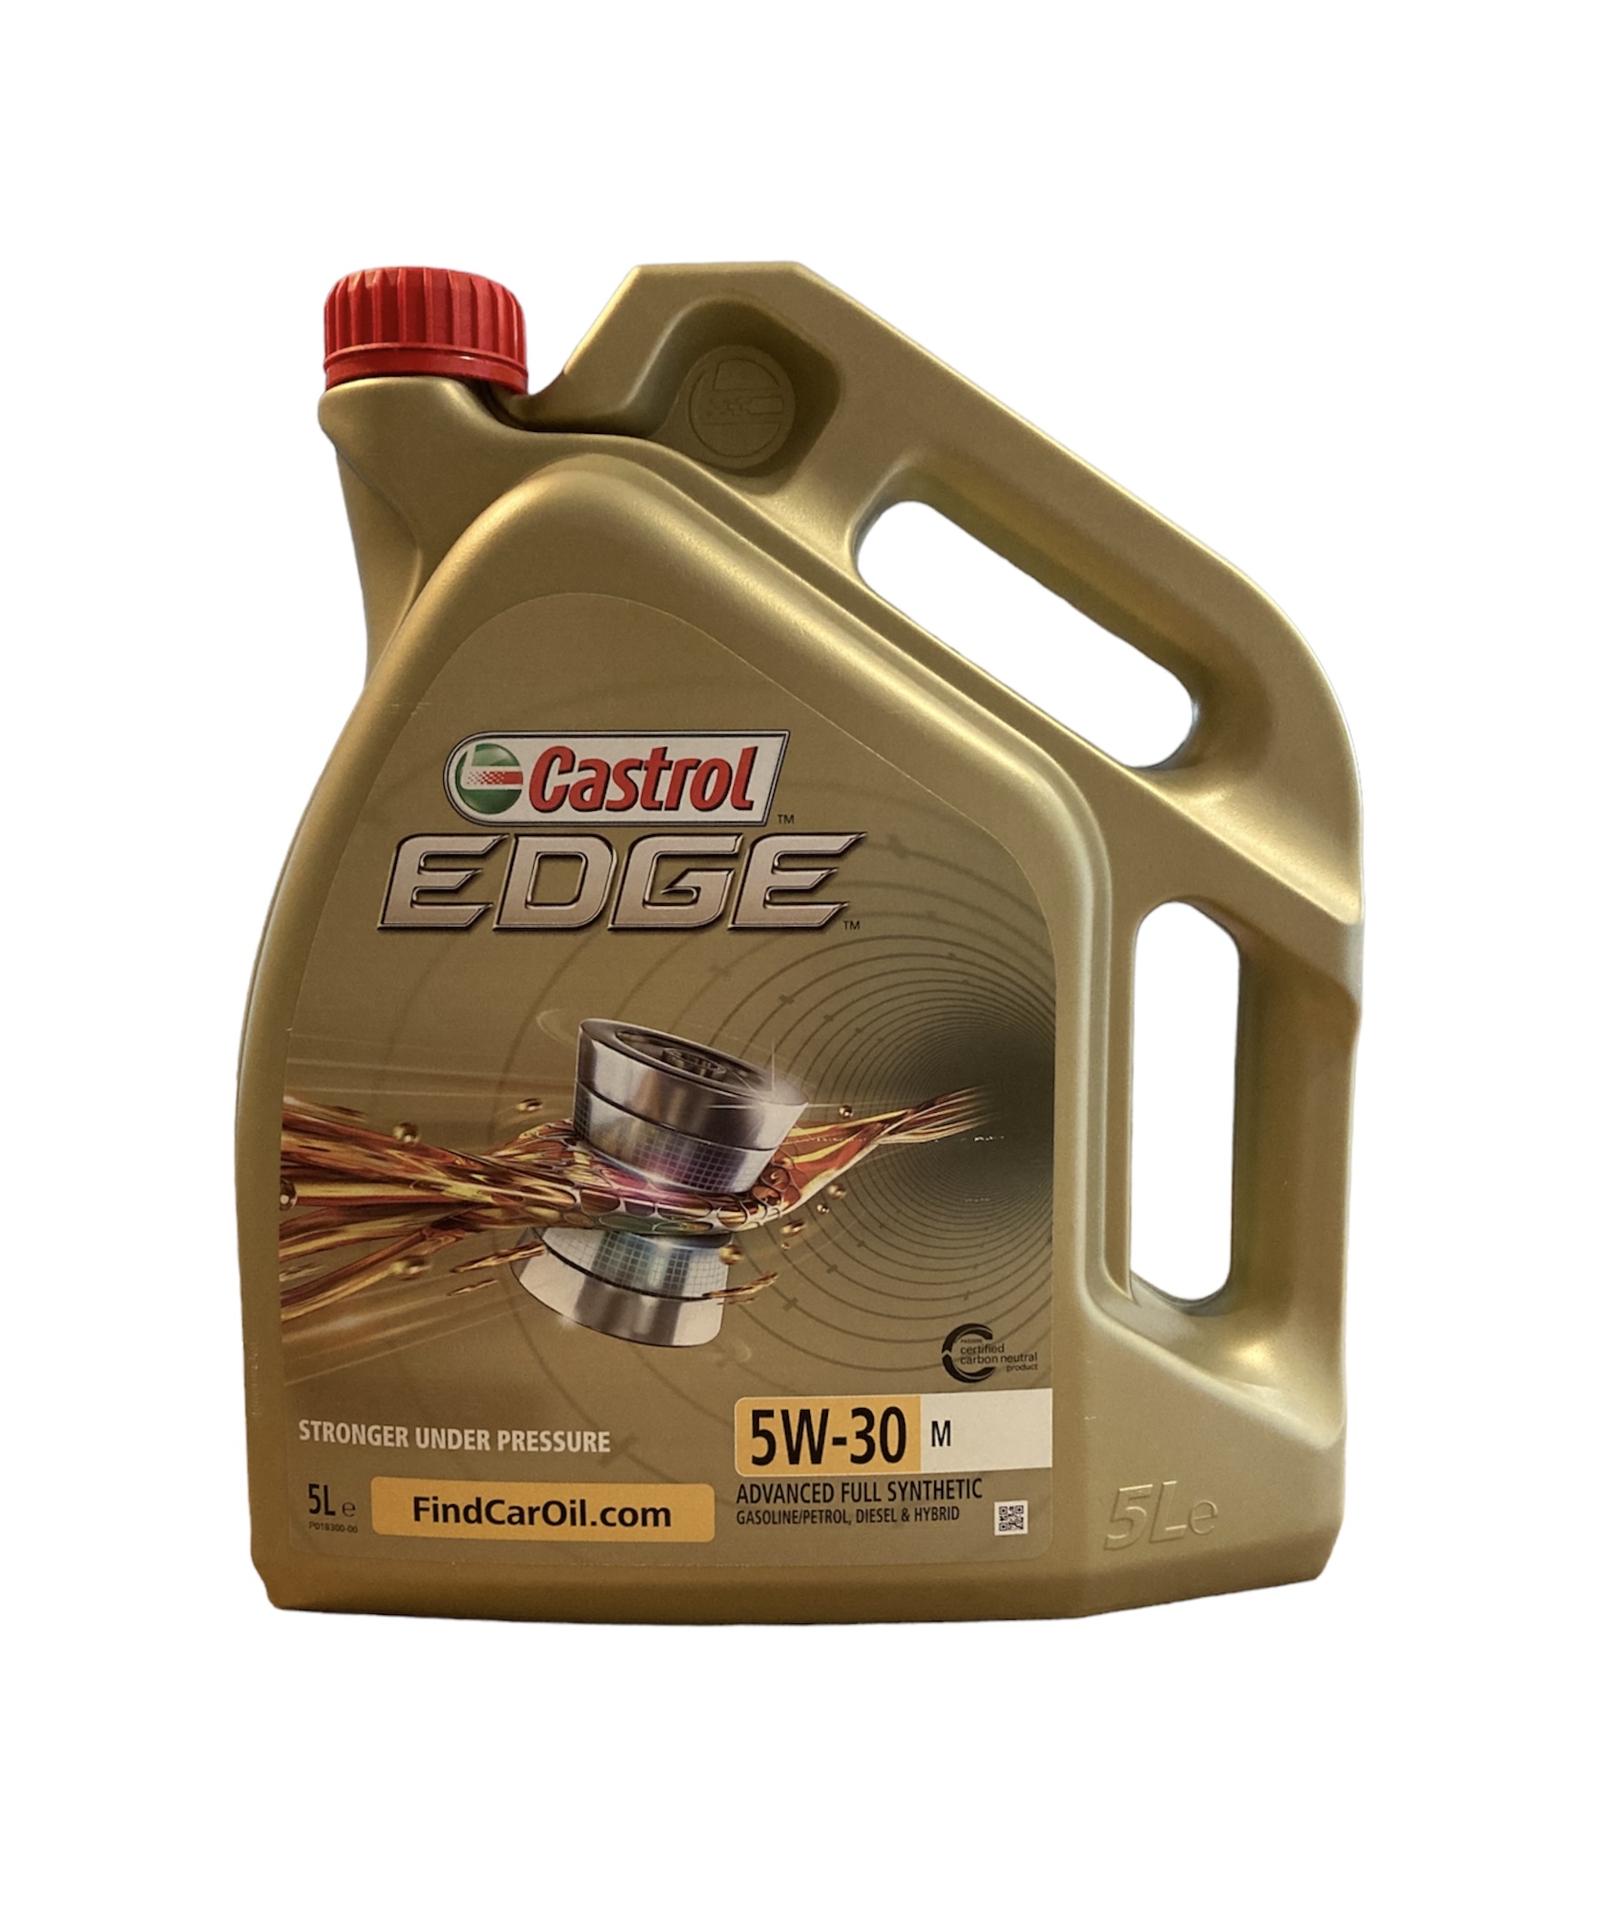 CASTROL EDGE 5W-30 LL 5L - Sidecarshop